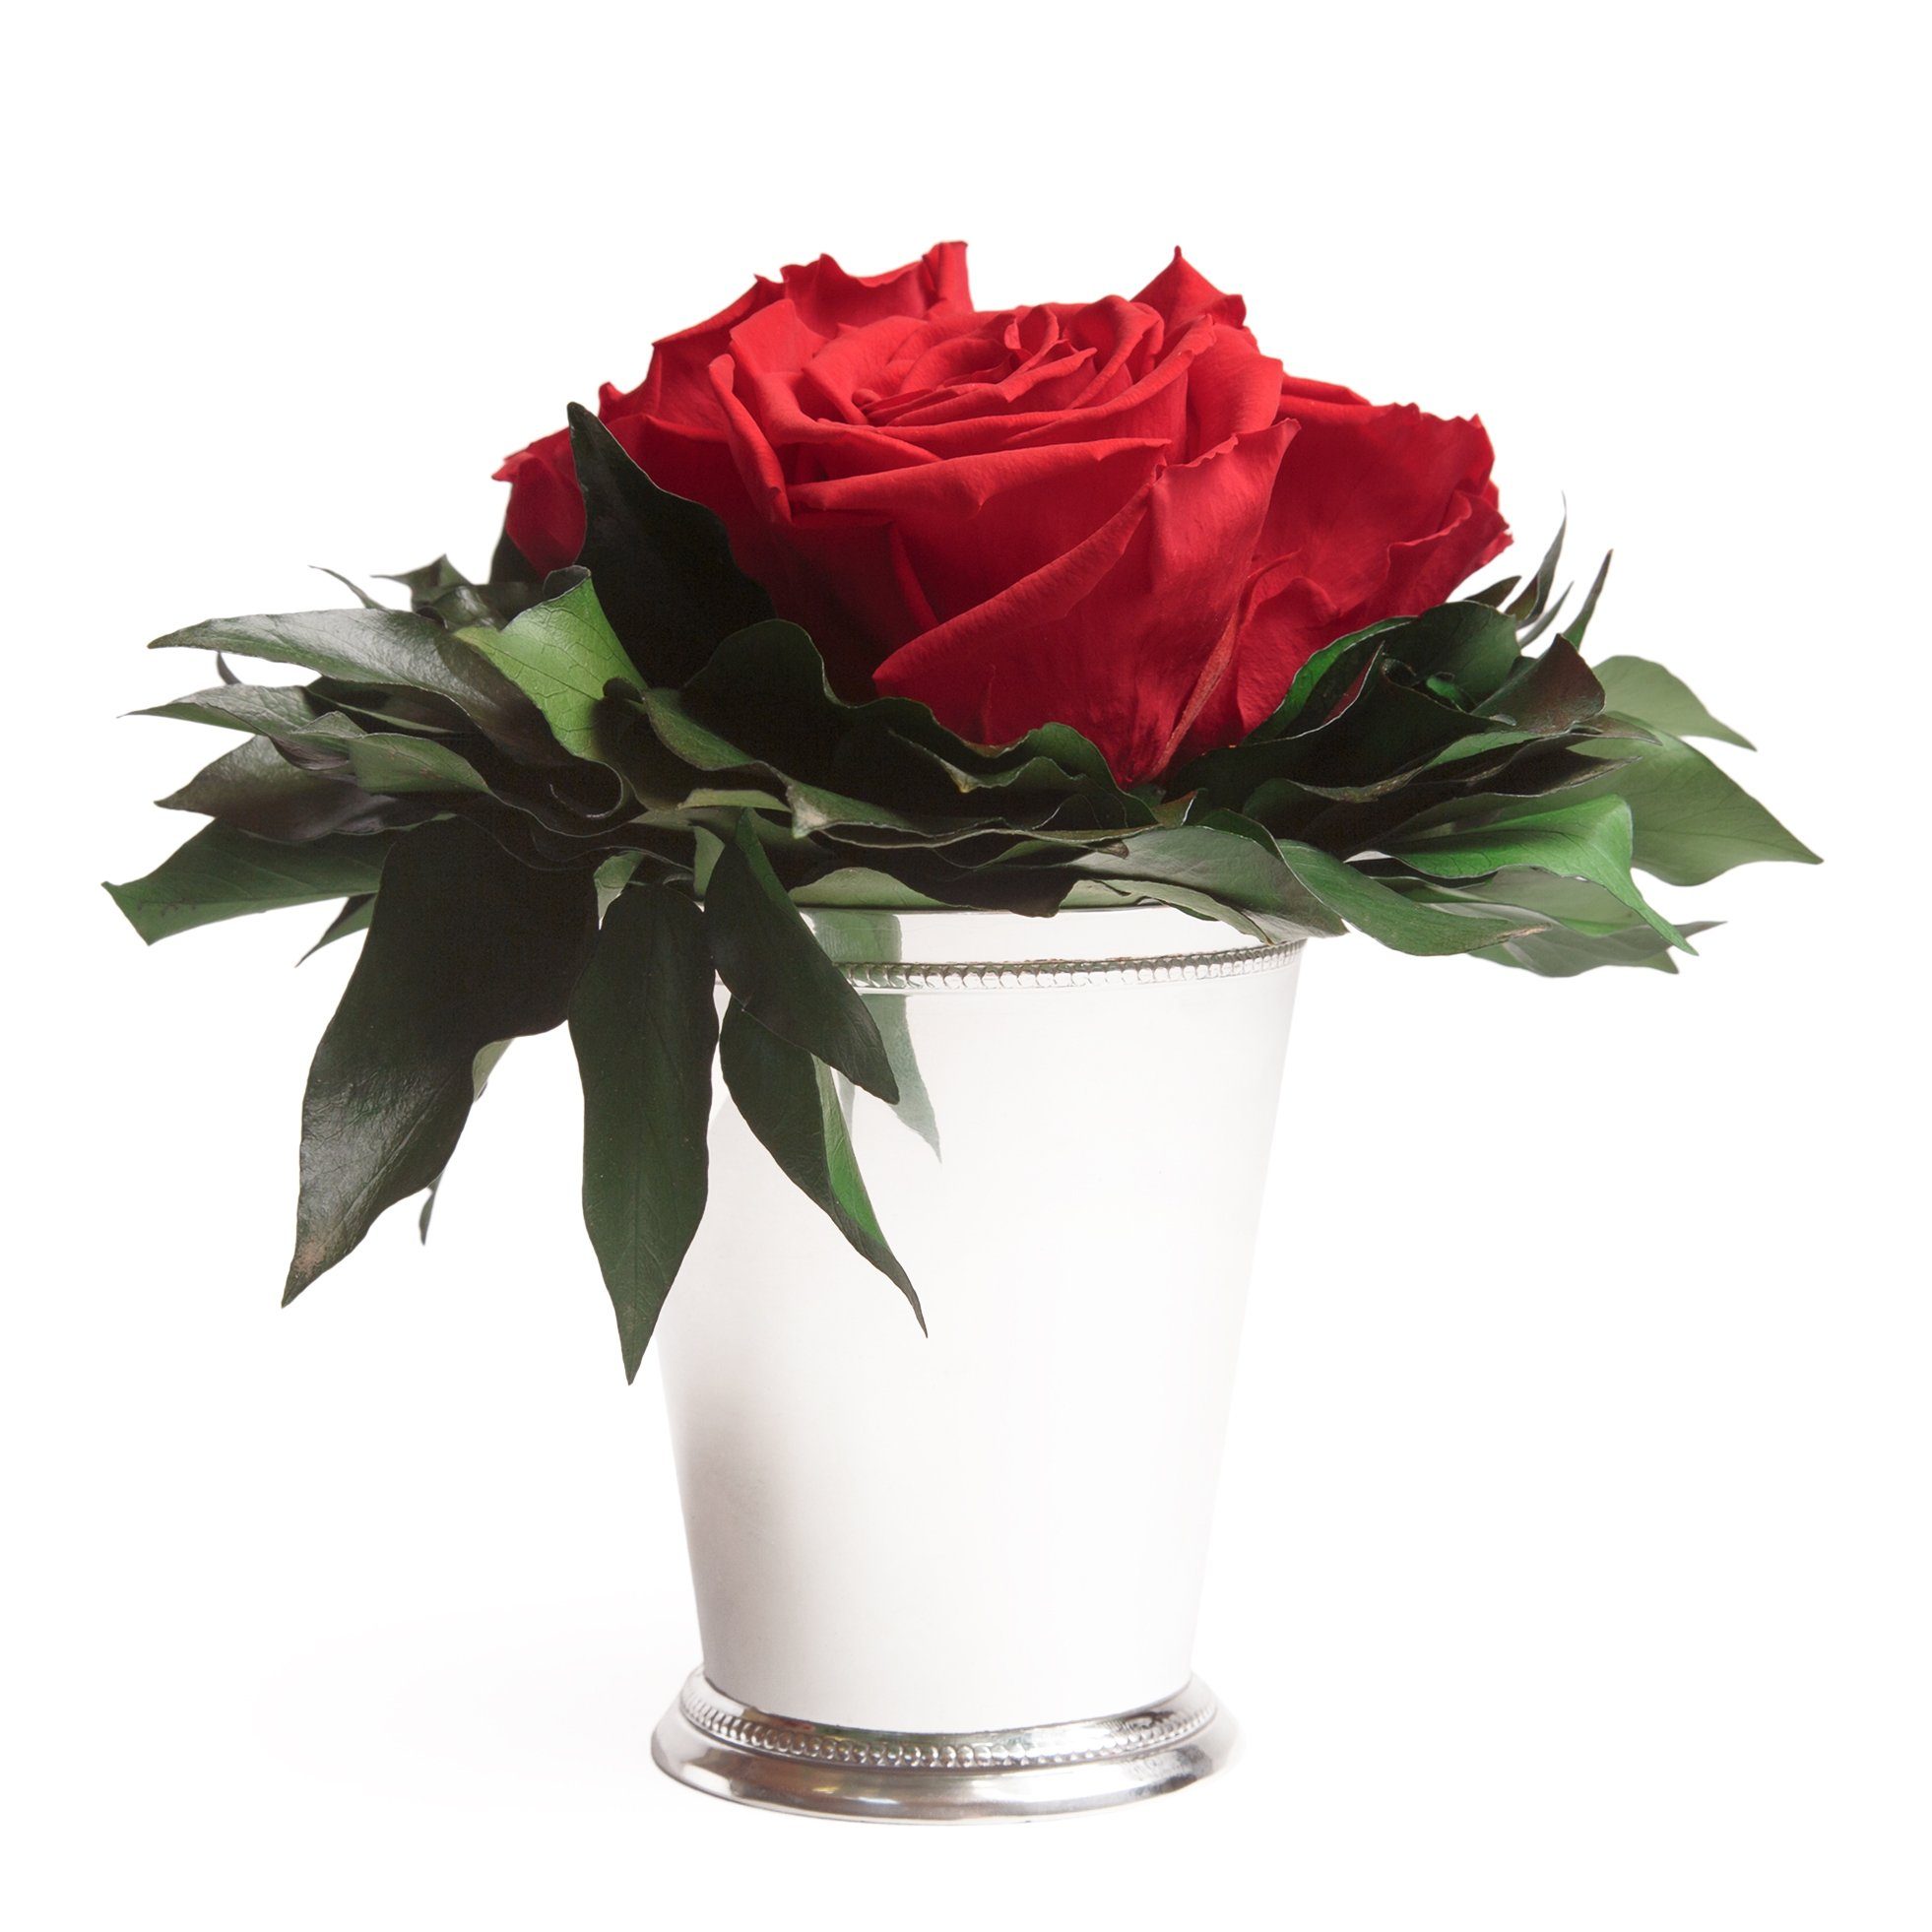 Kunstorchidee 3 Infinity Rosen silberfarbene Vase Wohnzimmer Deko Blumenstrauß Rose, ROSEMARIE SCHULZ Heidelberg, Höhe 15 cm, Rose haltbar bis zu 3 Jahre Rot